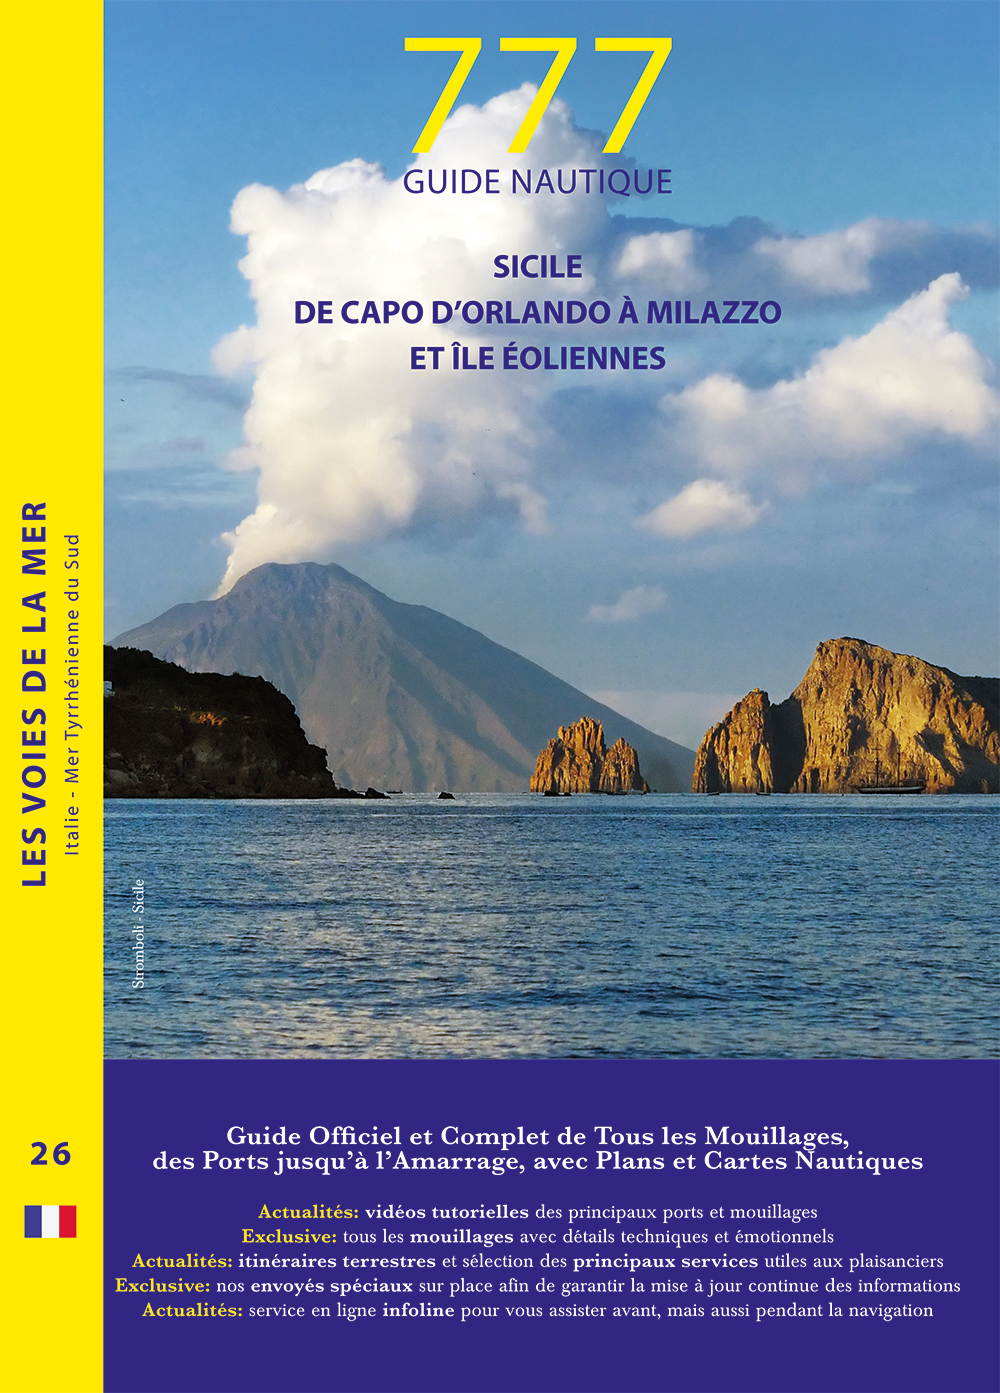 777 Guide nautique Sicile de Capo d'Orlando à Milazzo et île éoliennes